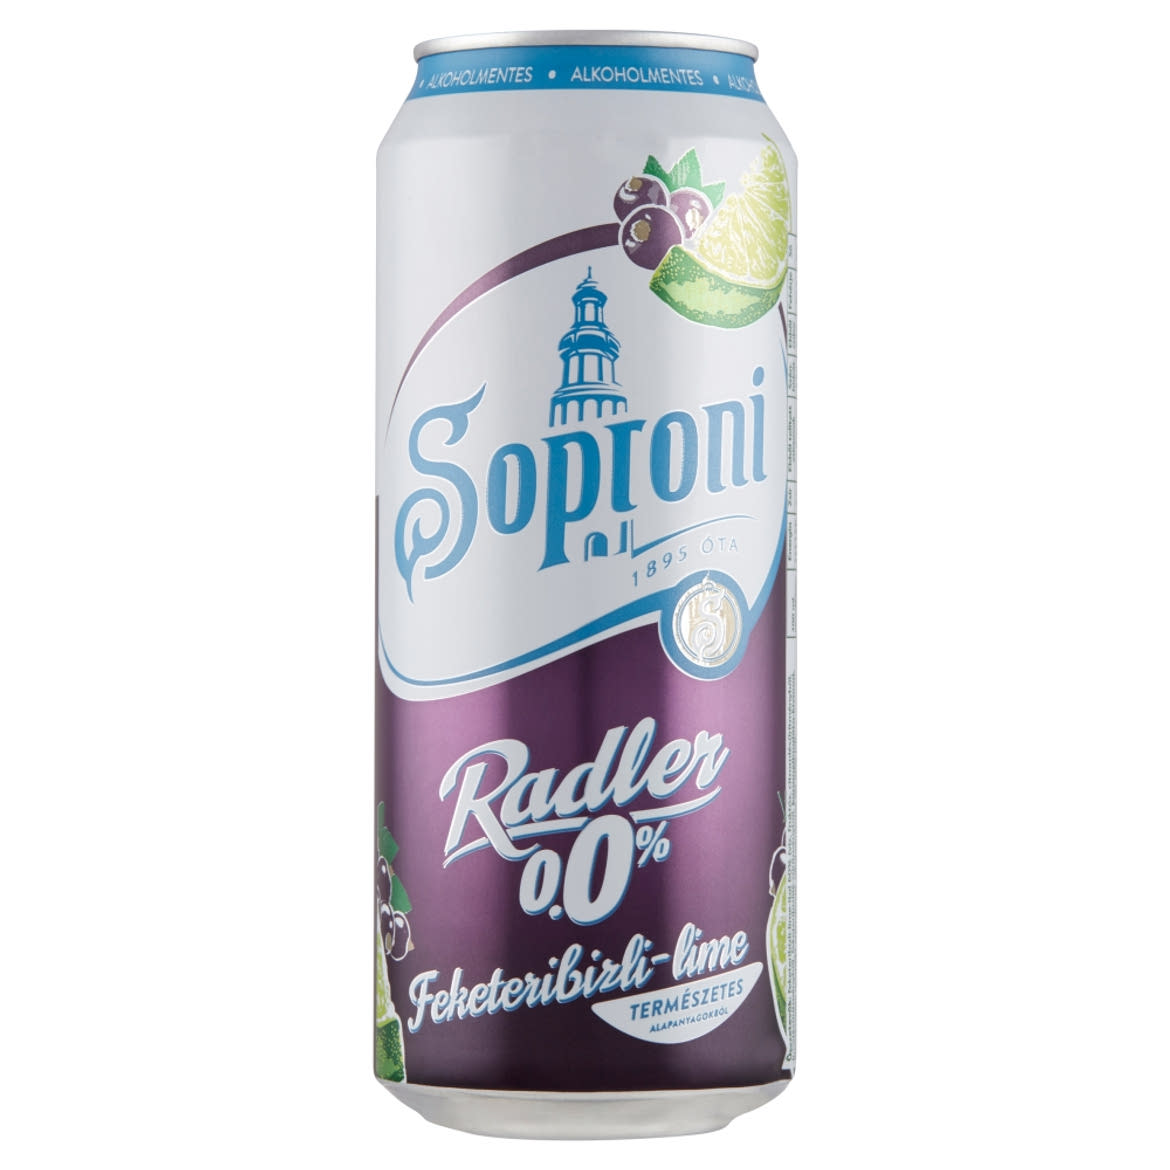 Soproni Radler feketeribizli-lime alkoholmentes sörital